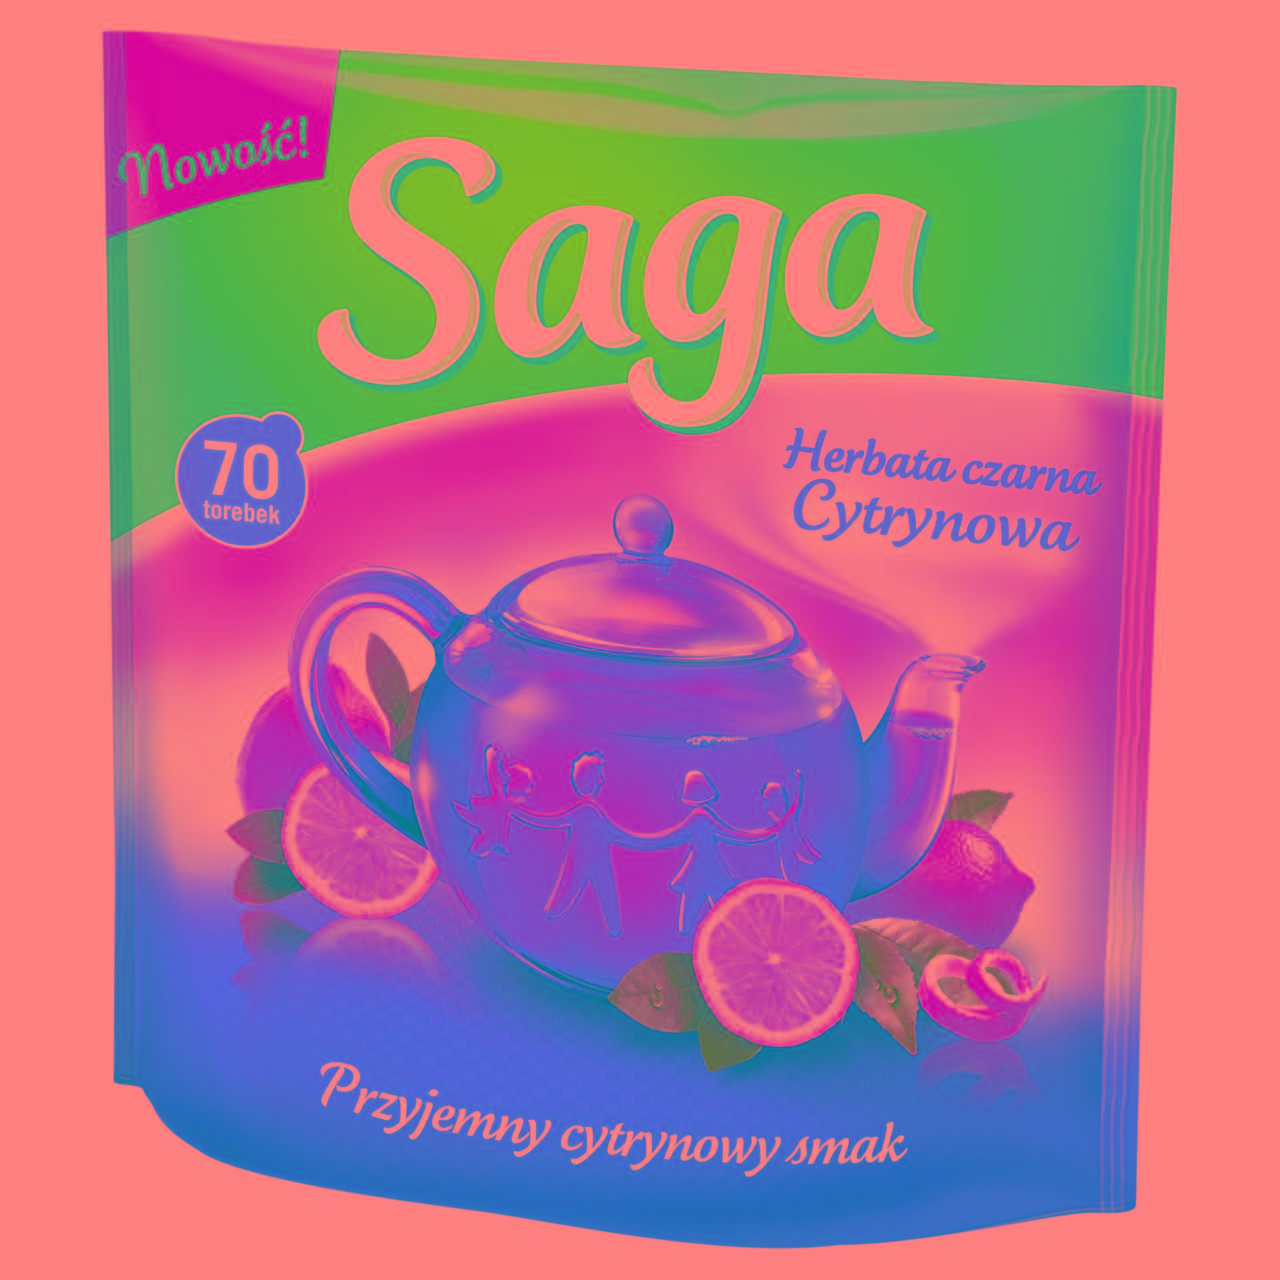 Zdjęcia - Saga Herbata czarna cytrynowa 91 g (70 torebek)